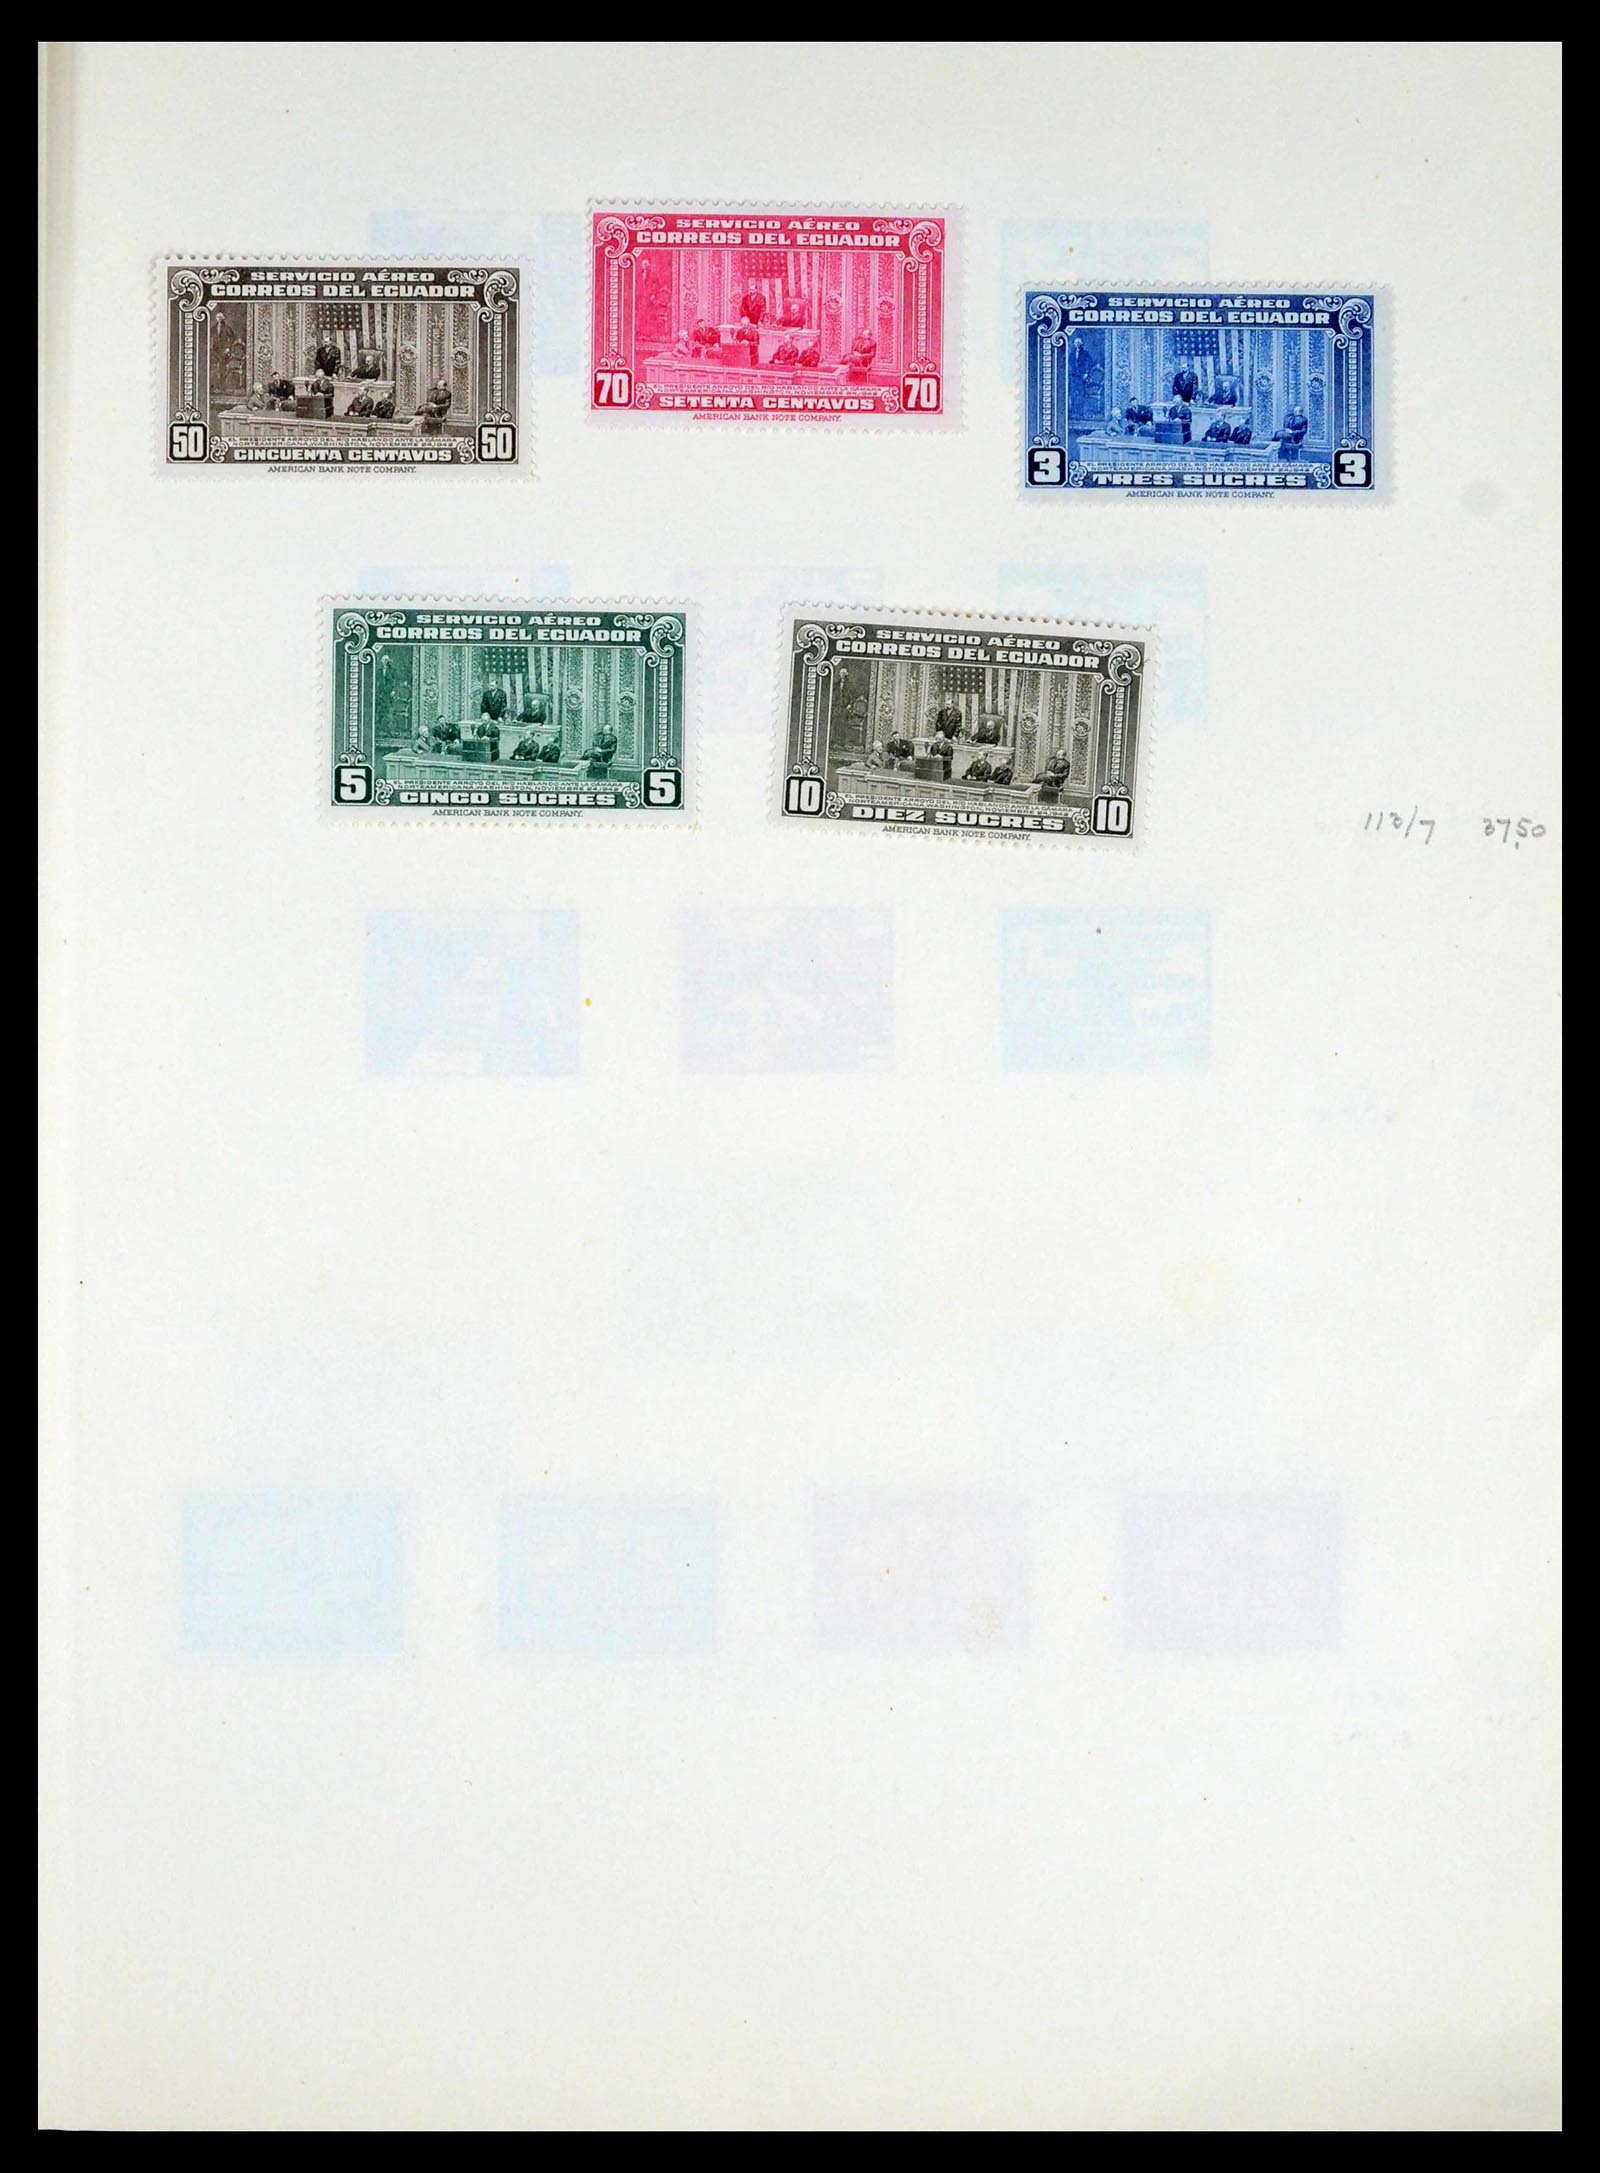 39456 0009 - Stamp collection 39456 Ecuador 1865-1960.